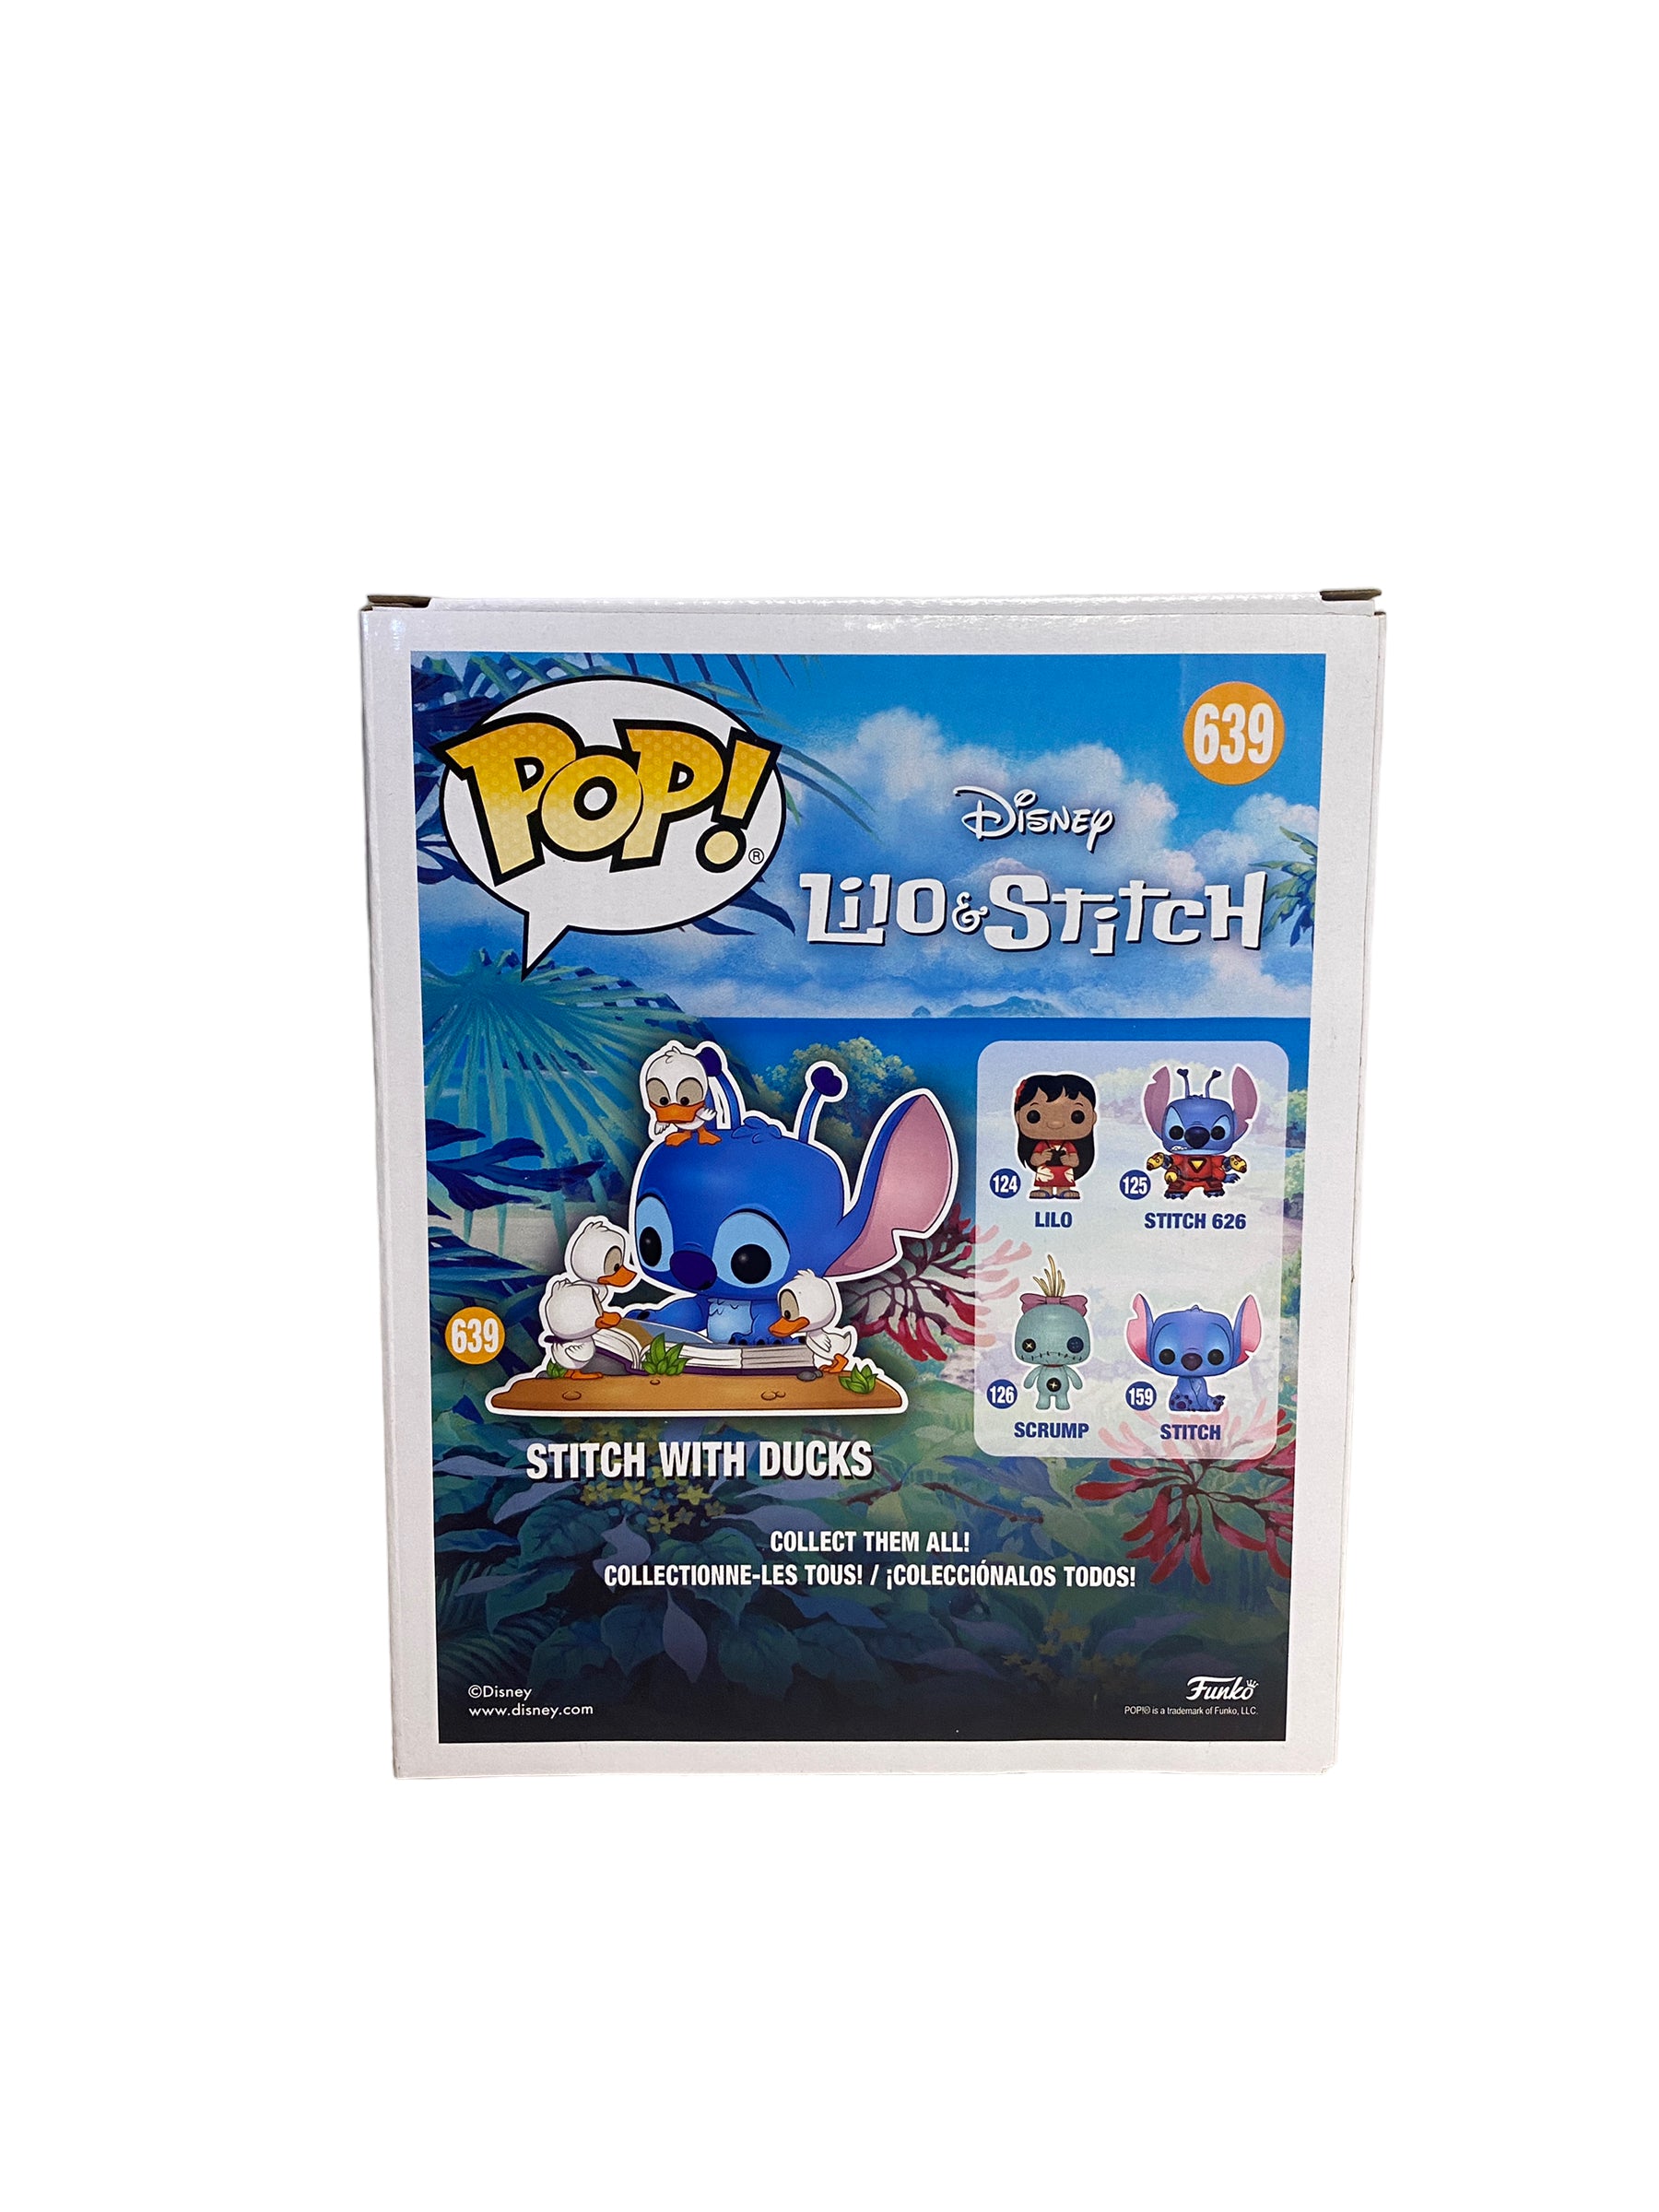 Stitch With Ducks #639 Deluxe Funko Pop! - Lilo & Stitch - Special Edition - Condition 9/10